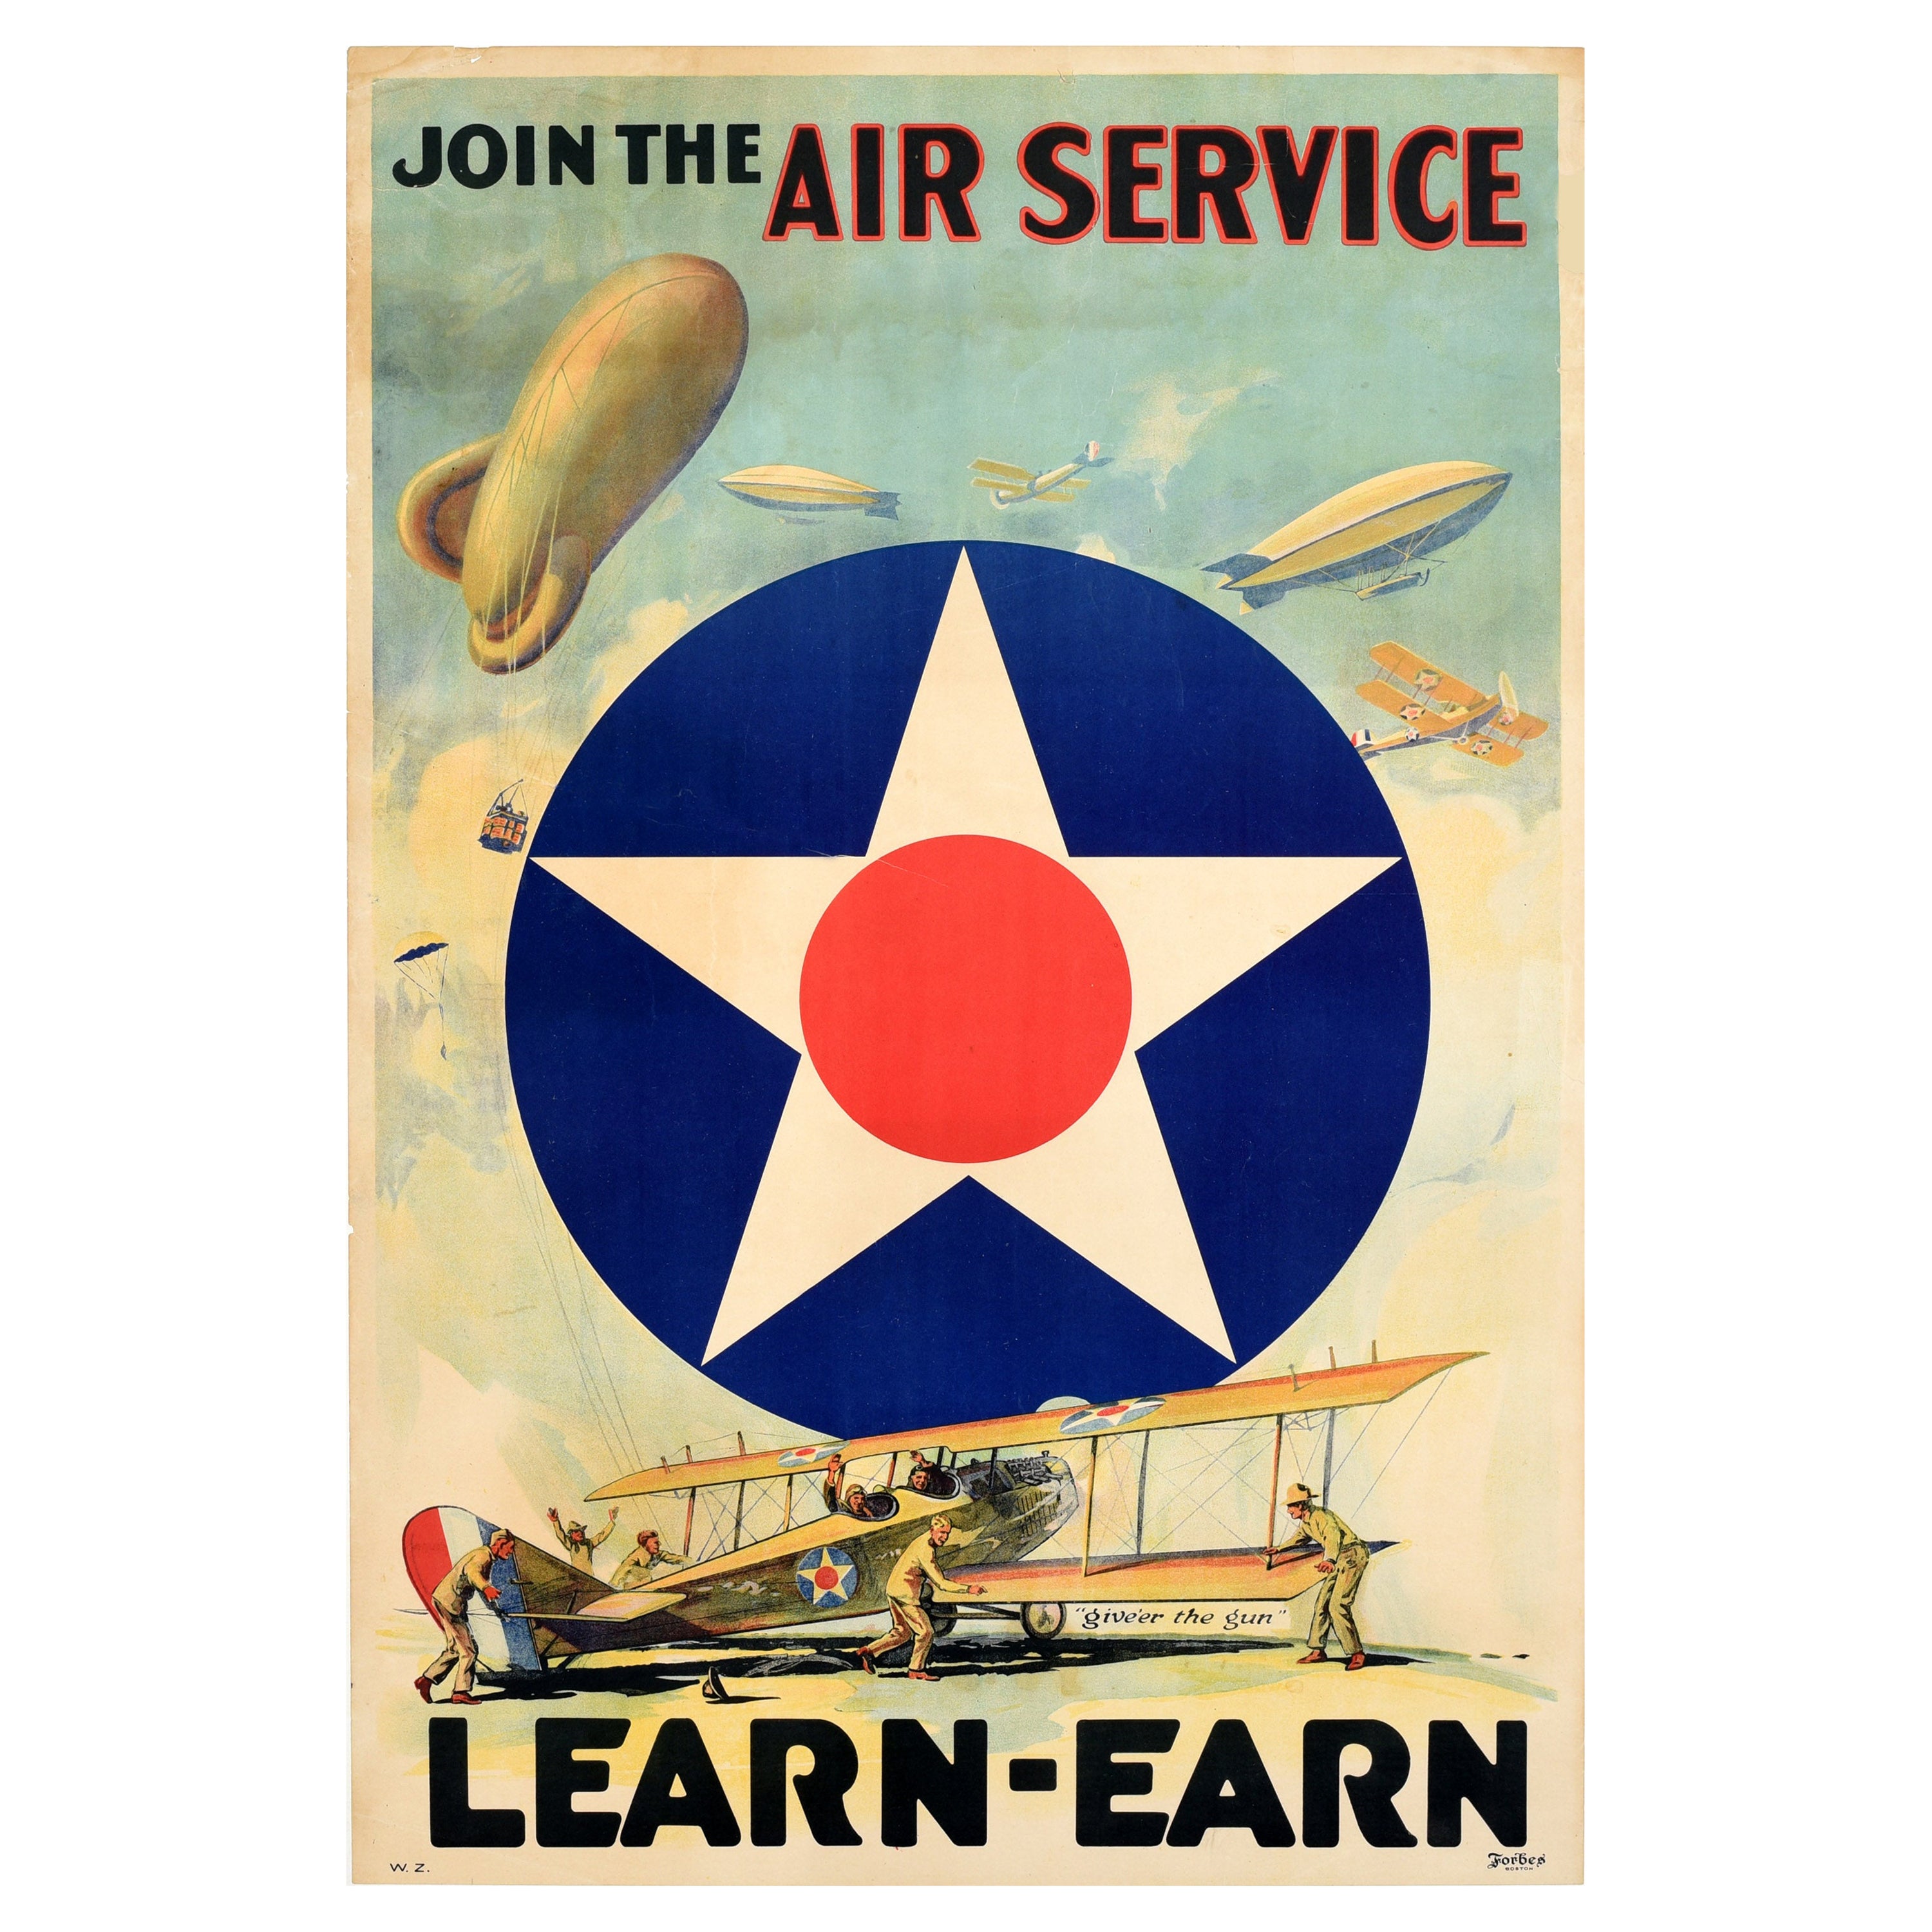 Affiche ancienne originale Rejoignez le service aérien Learn Earn de la première guerre mondiale - US Army Air Corps